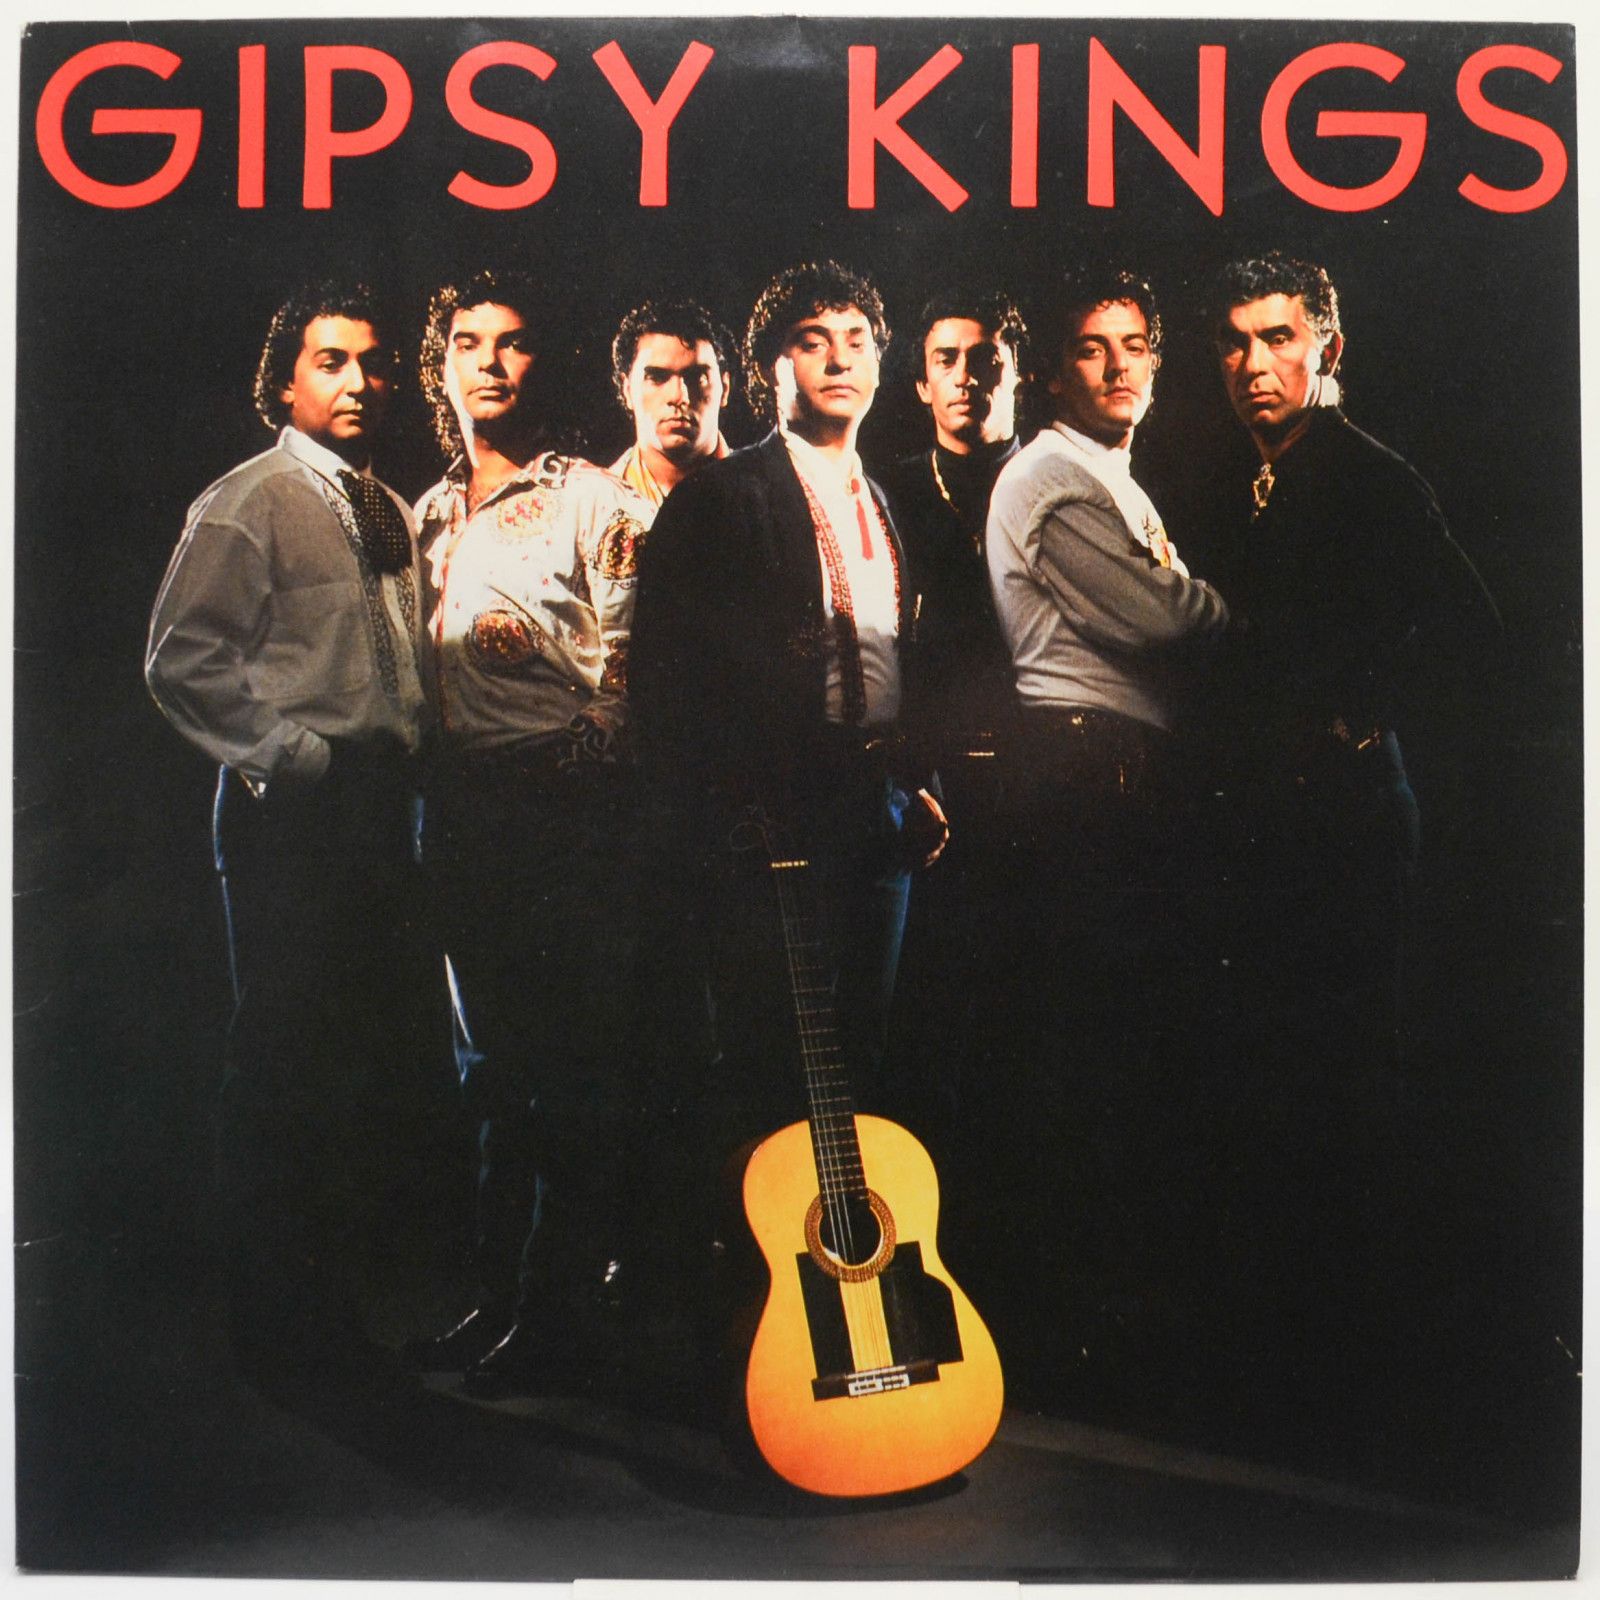 Gipsy Kings — Gipsy Kings, 1987